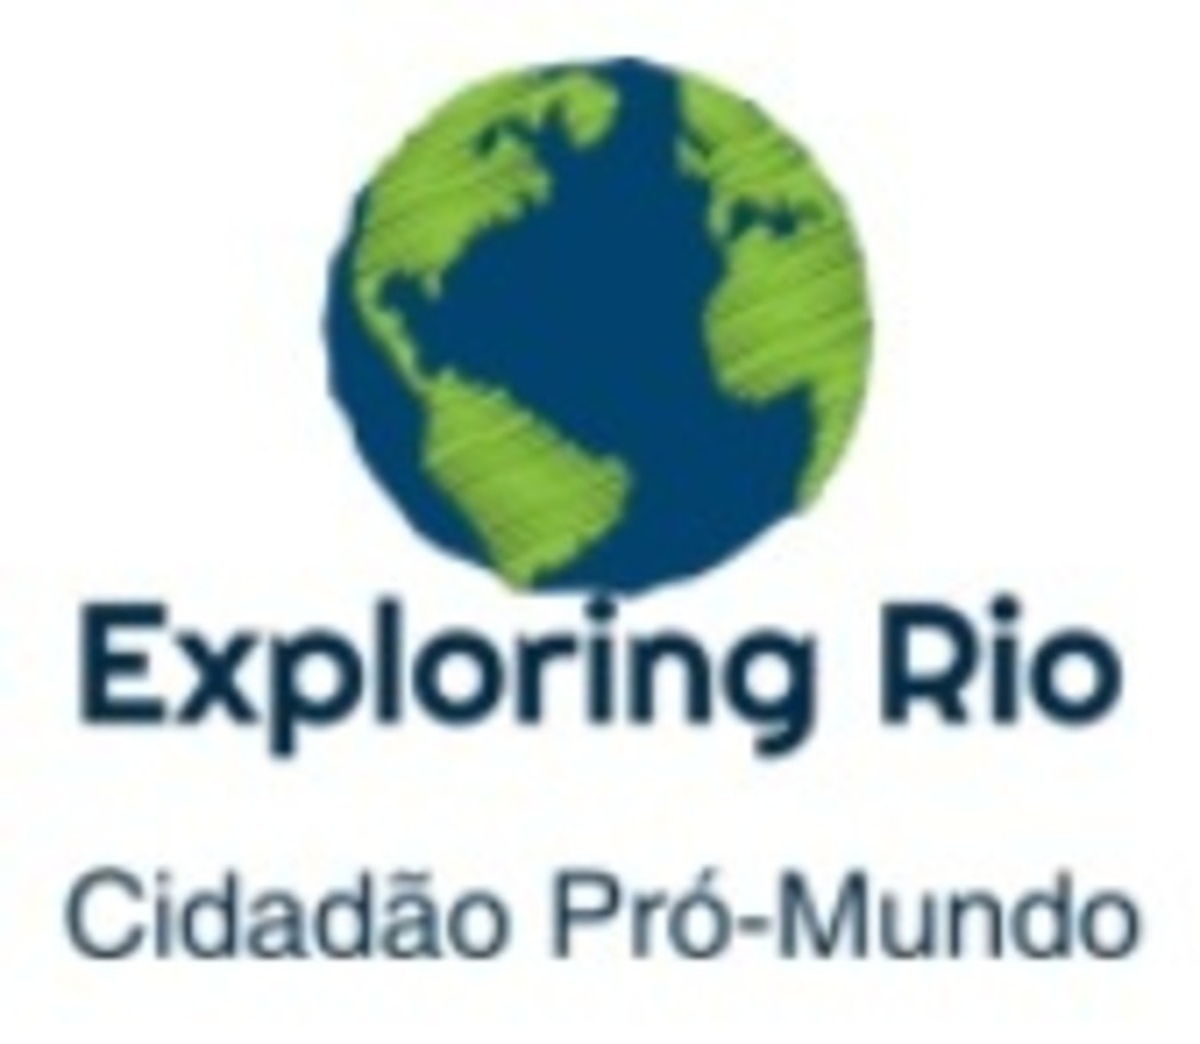 Exploring Rio - Cidadão Pró mundo